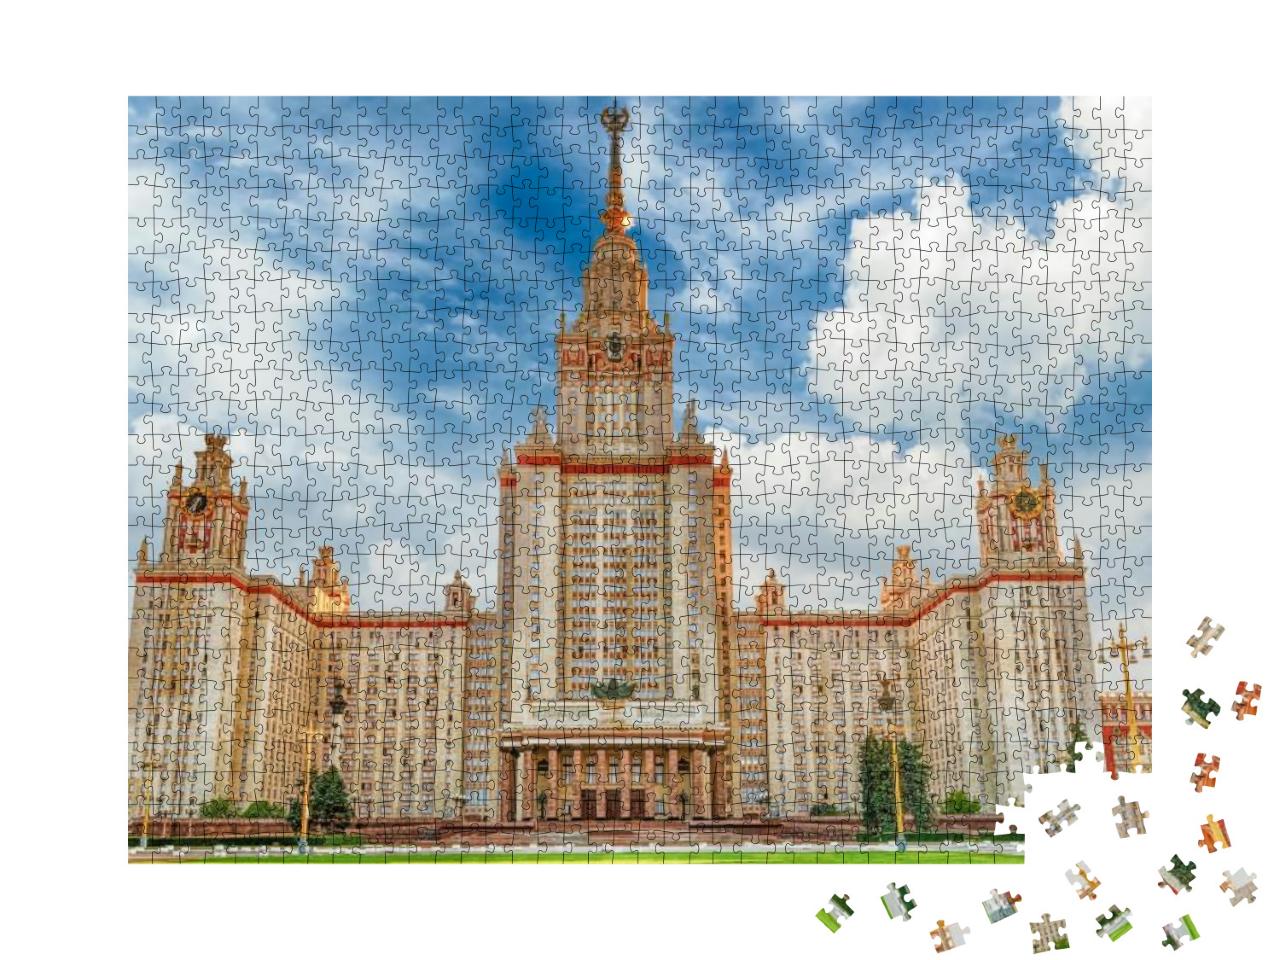 Puzzle 1000 Teile „Staatliche Lomonossow-Universität, Moskau, Russland“